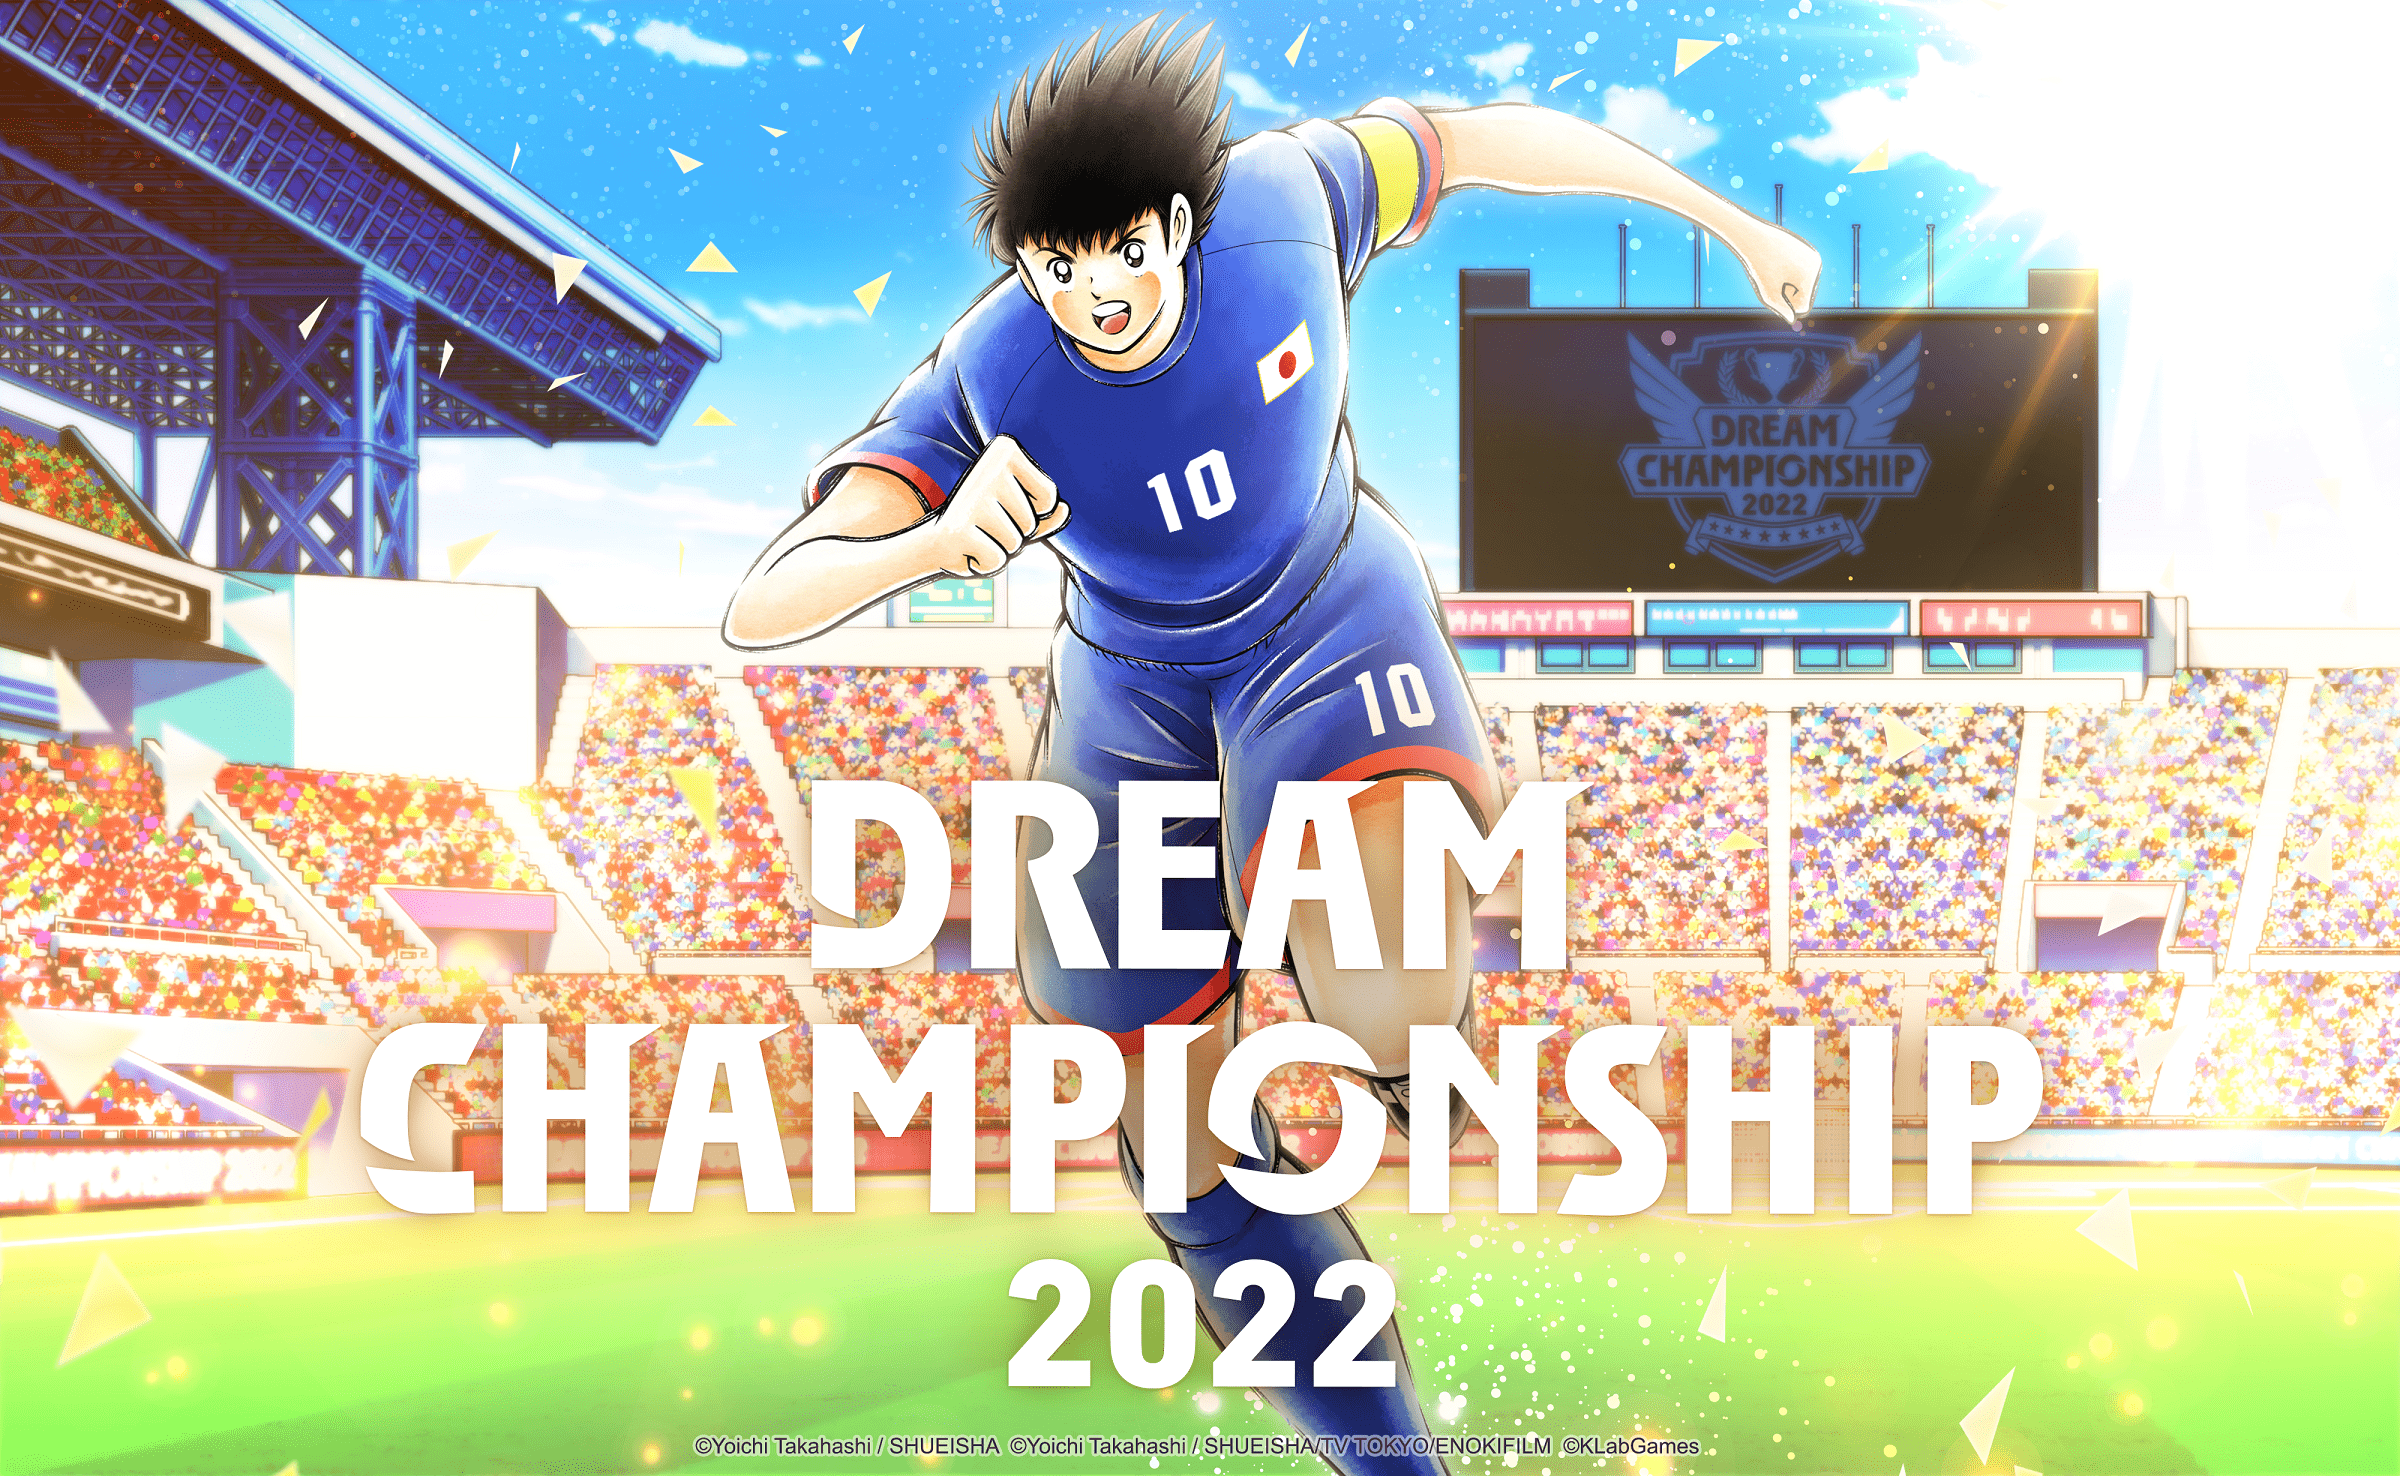 【大会情報】Dream Championship オンライン予選 Round3【2022年9月23日～30日】